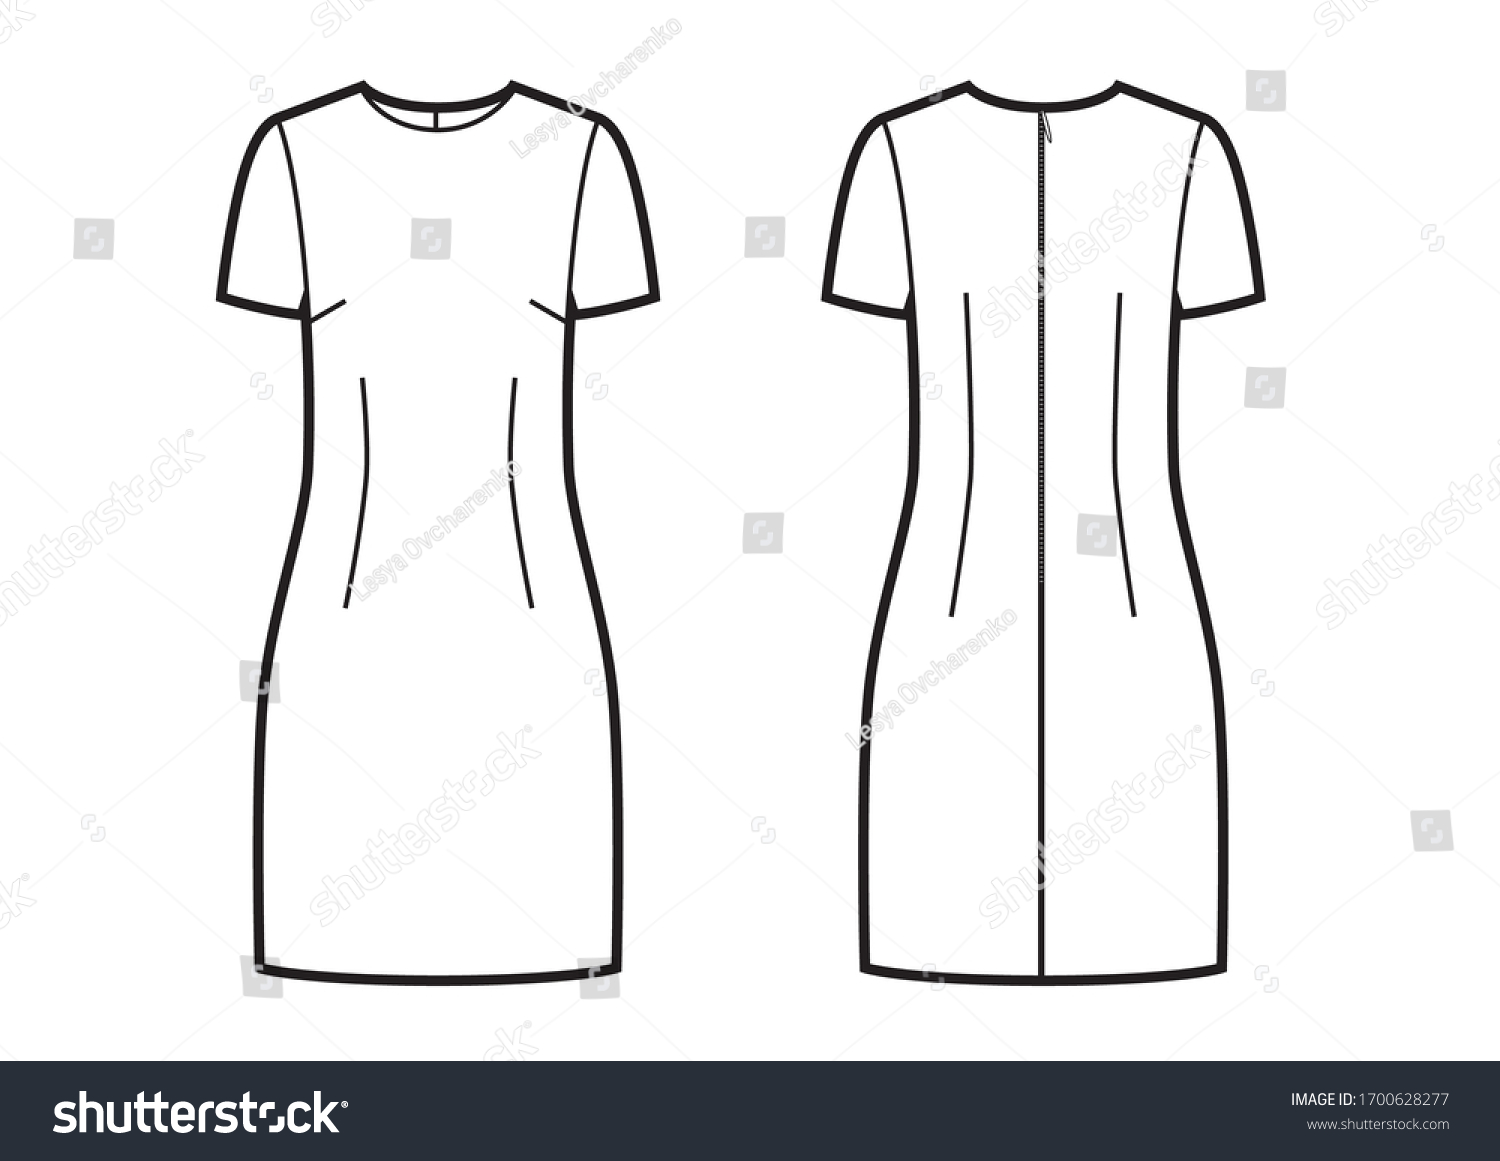 Blank Women Bodycon Dress Vector Design Stock Vector (Royalty Free ...